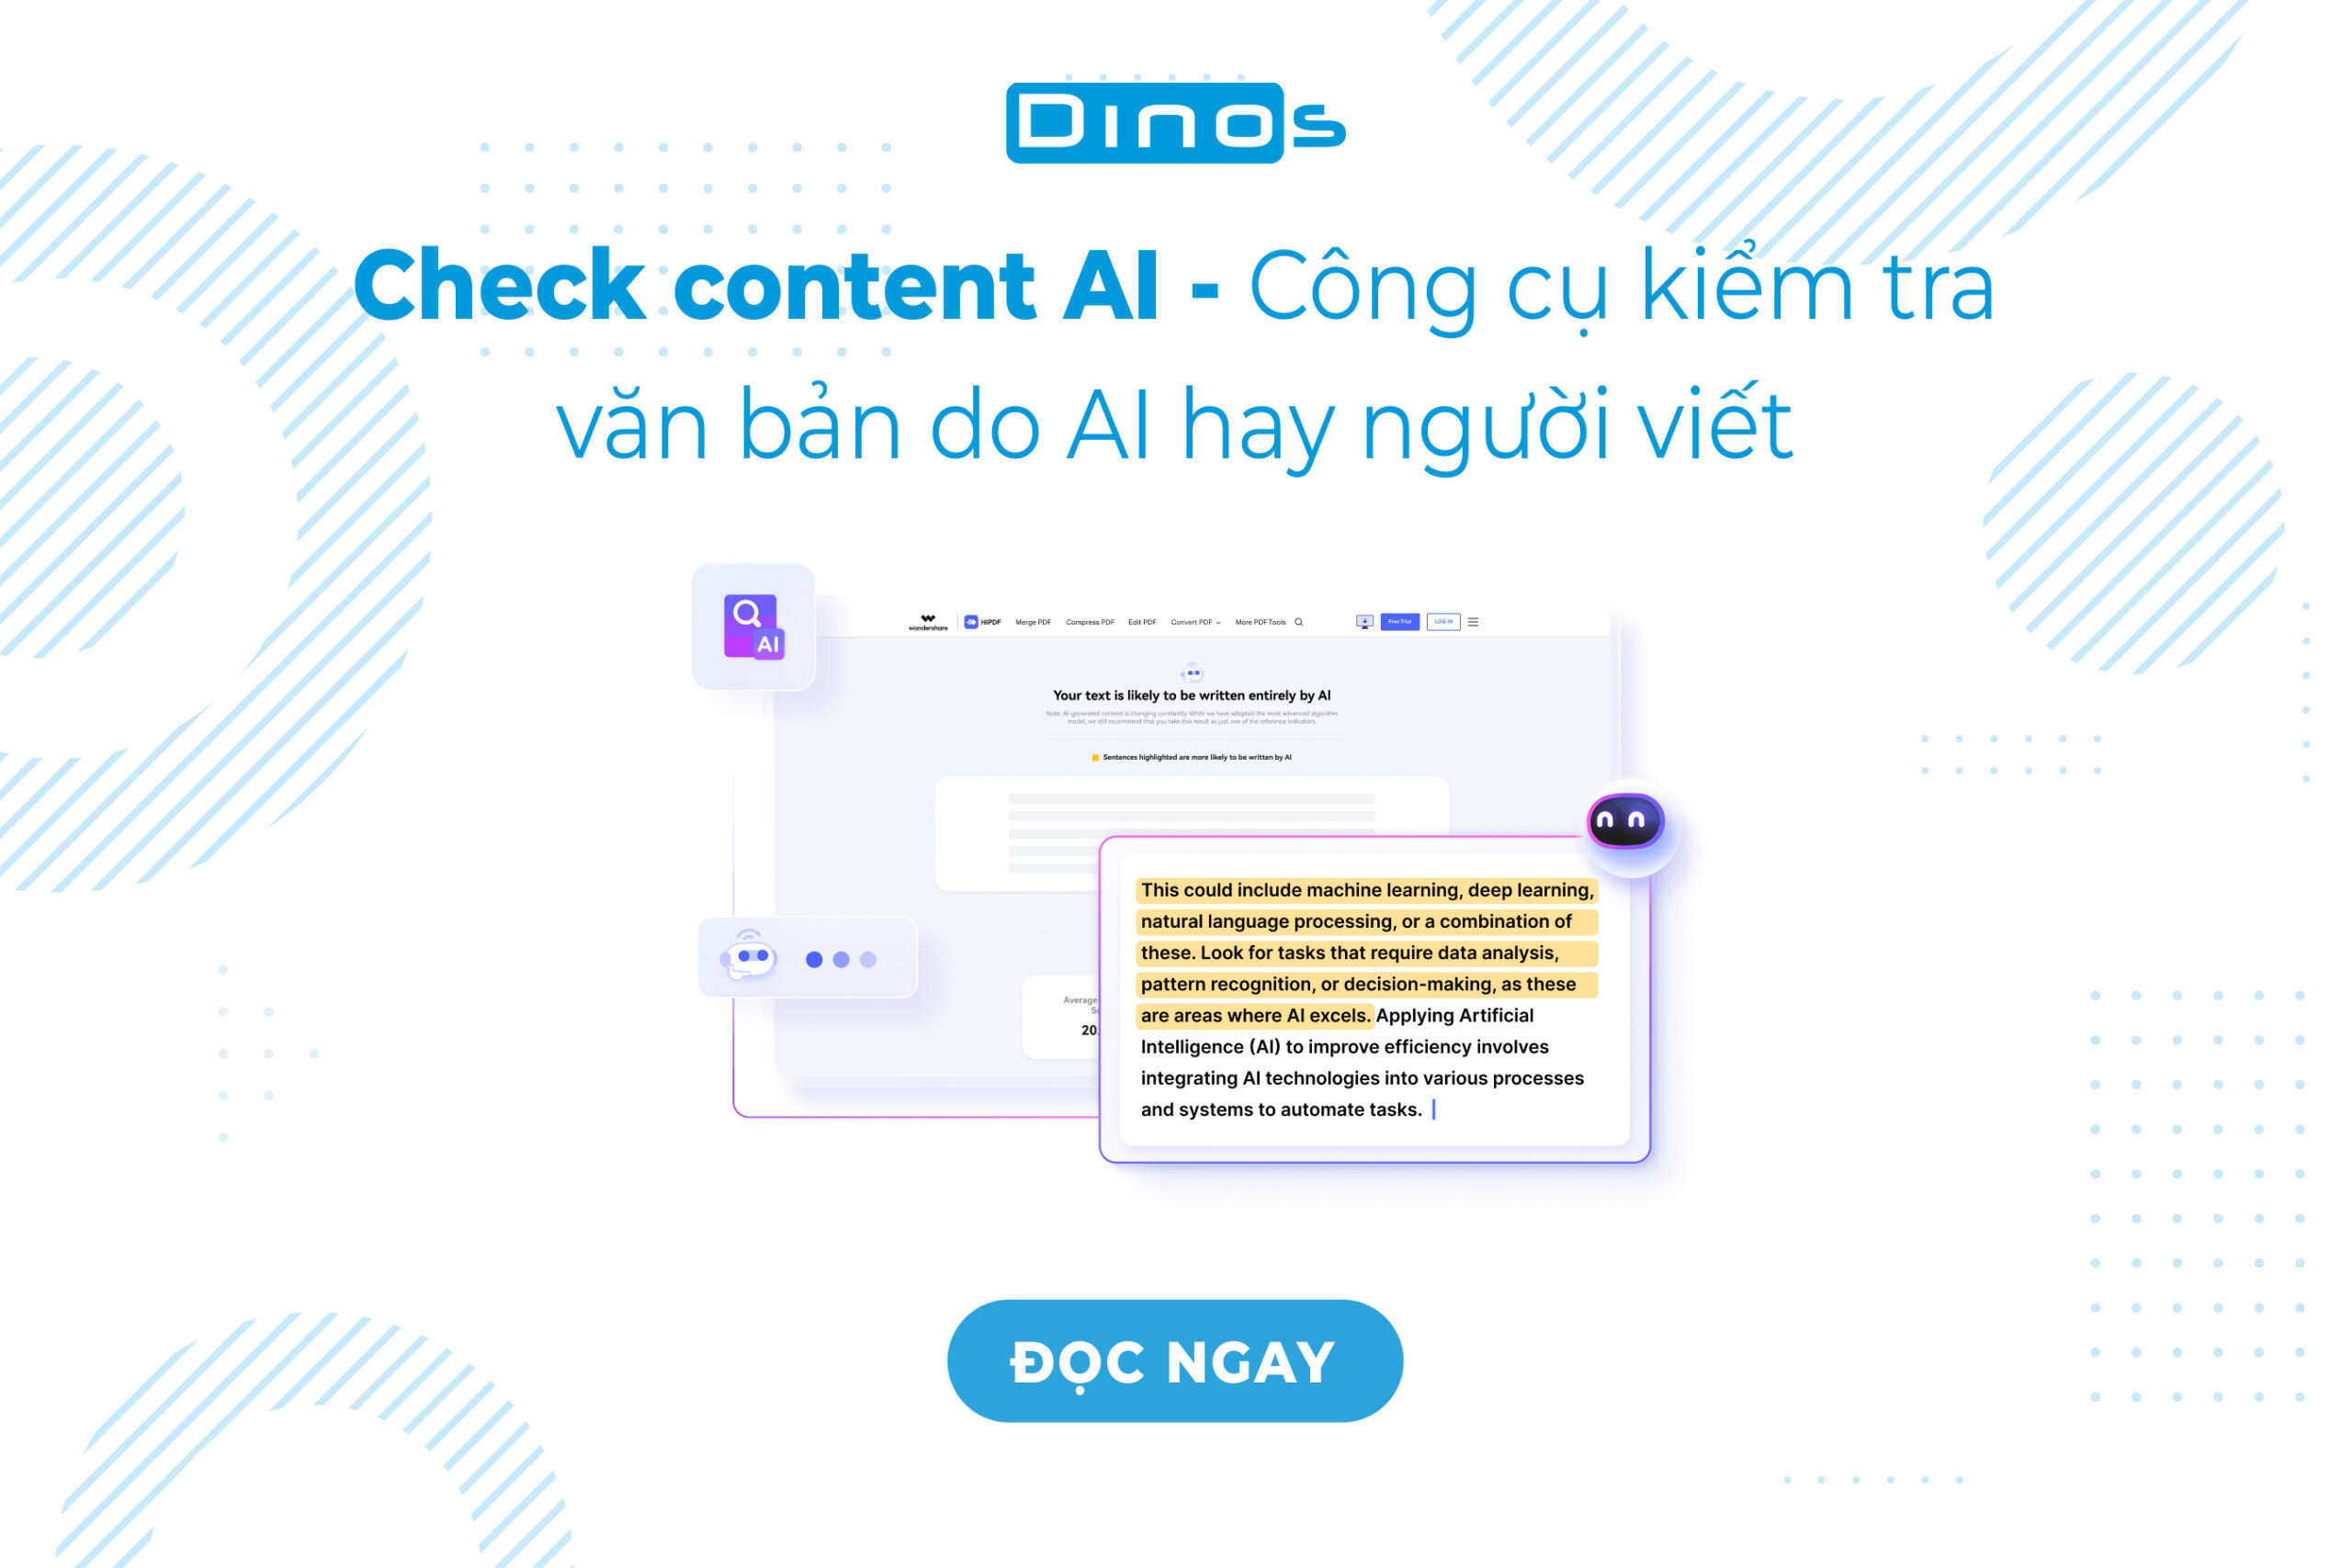 Check content AI – Công cụ kiểm tra văn bản do AI hay người viết